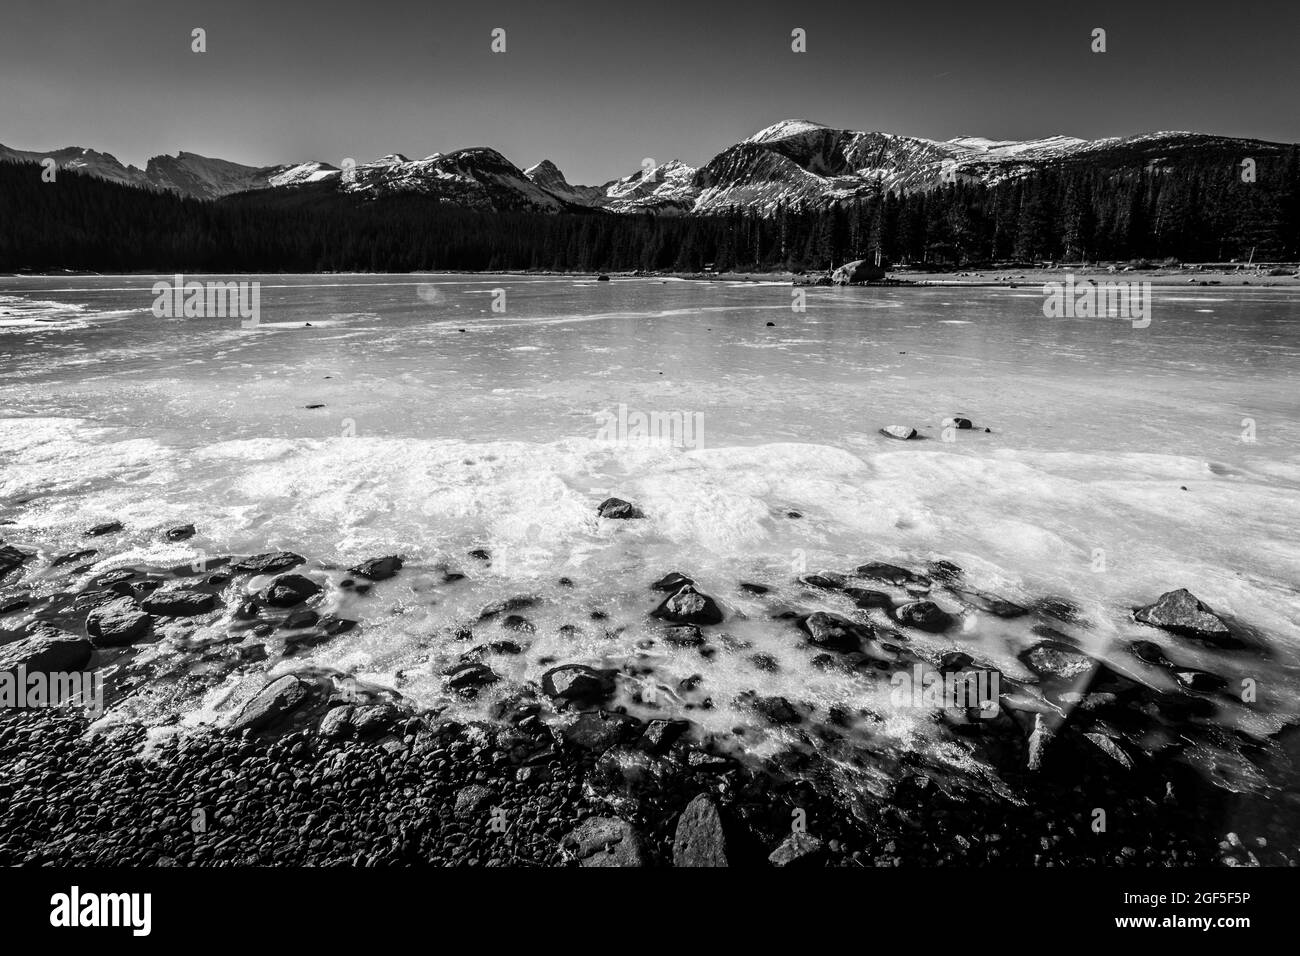 Un paysage large et à faible angle de vue d'un lac gelé couvert de glace le long de la rive avec des pins et des montagnes en arrière-plan en noir et blanc Banque D'Images